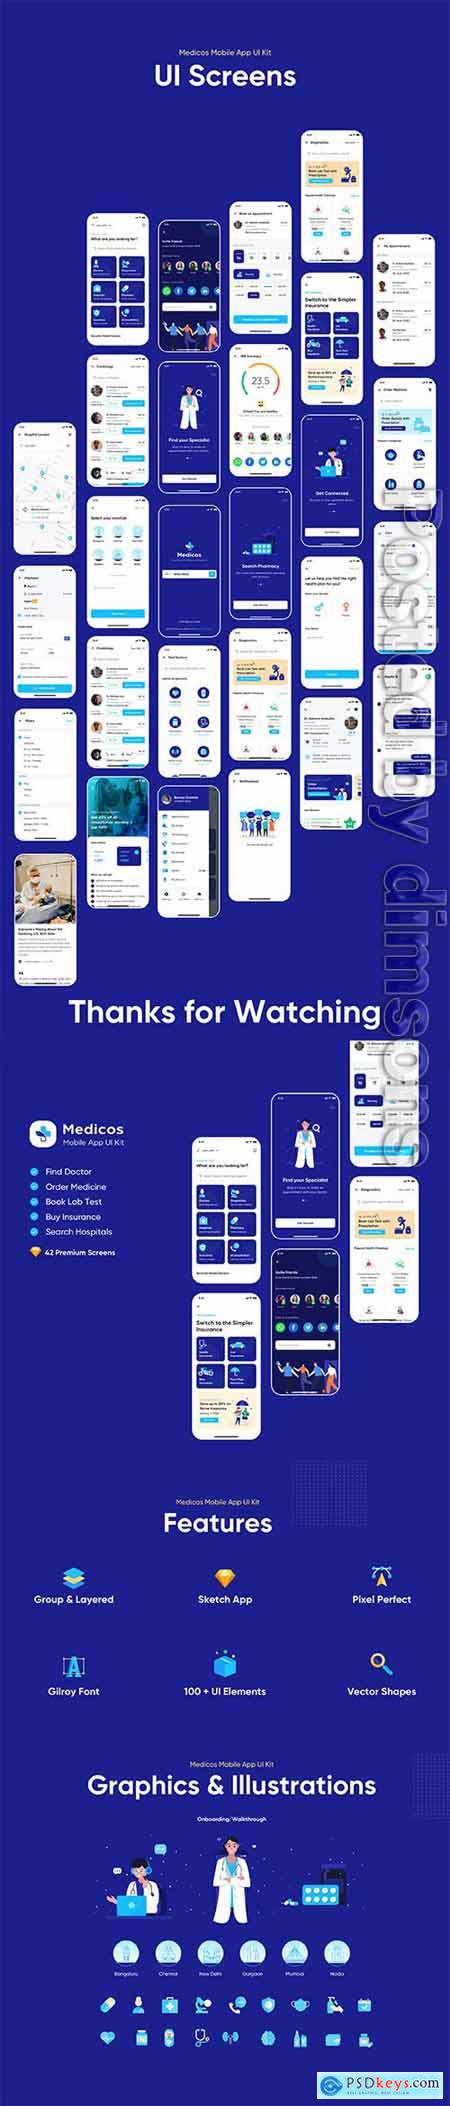 Medicos - Healthcare Mobile Sketch App UI Kit